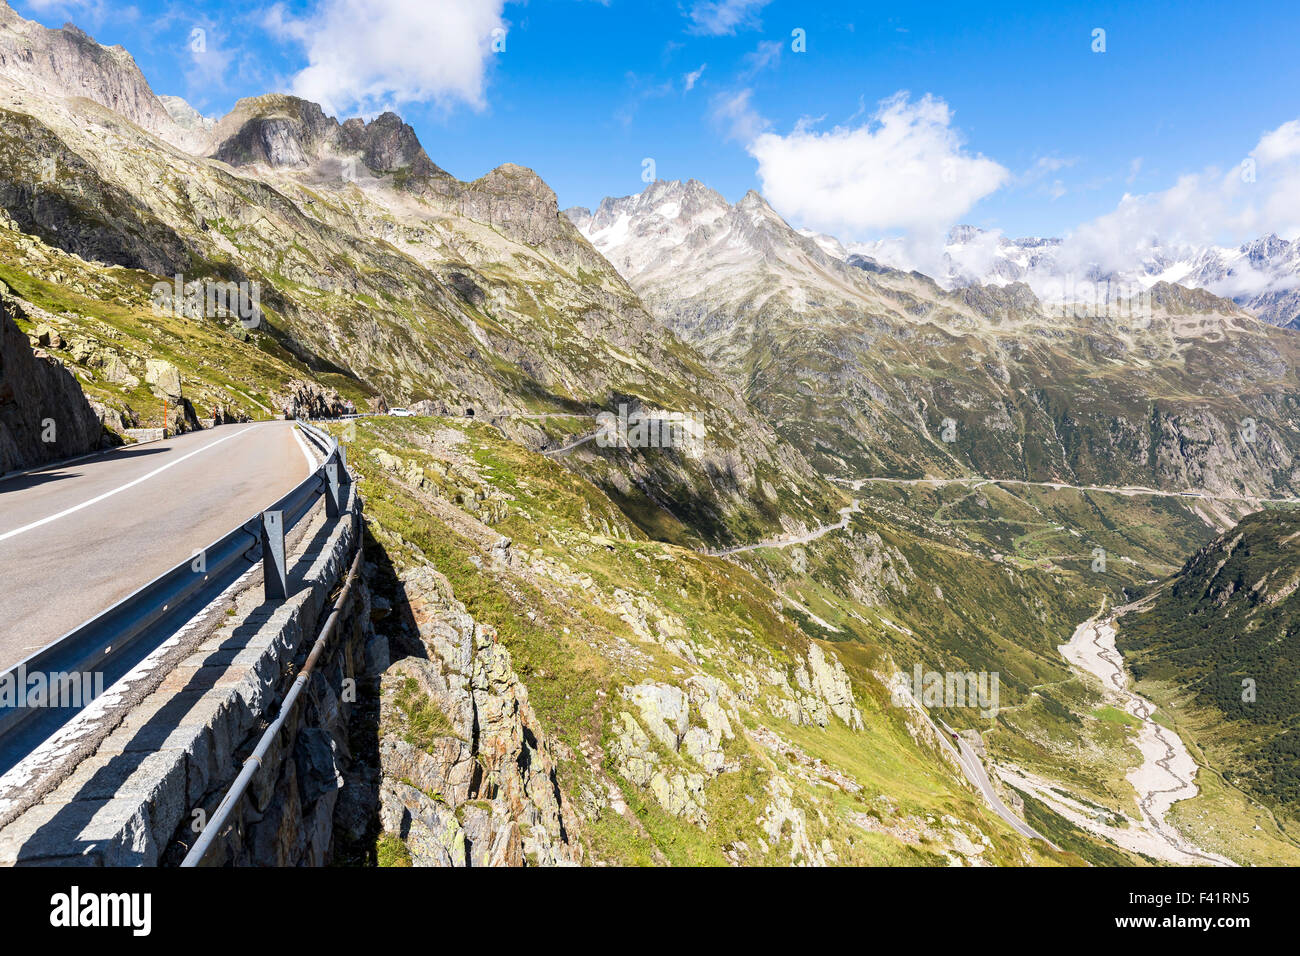 Mountain pass road Sustenpass, Meiental, Canton of Uri, Switzerland Stock Photo